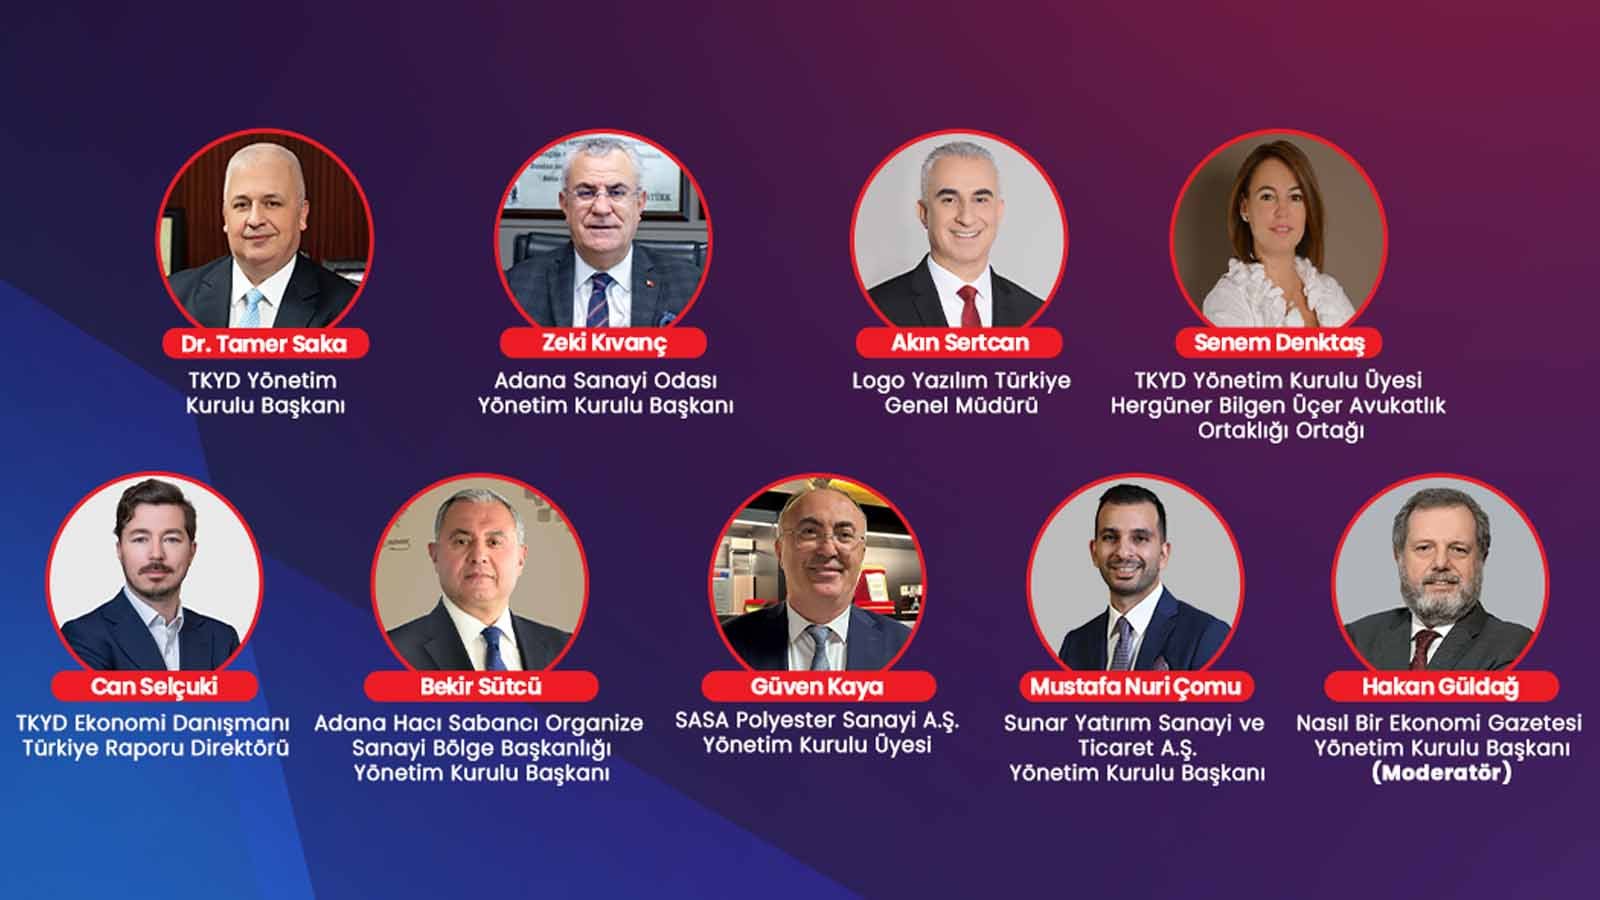 Anadolu Panelleri Adana’da Kurumsal Yönetim Ve Sürdürülebilirlik Temasıyla Yapılacak